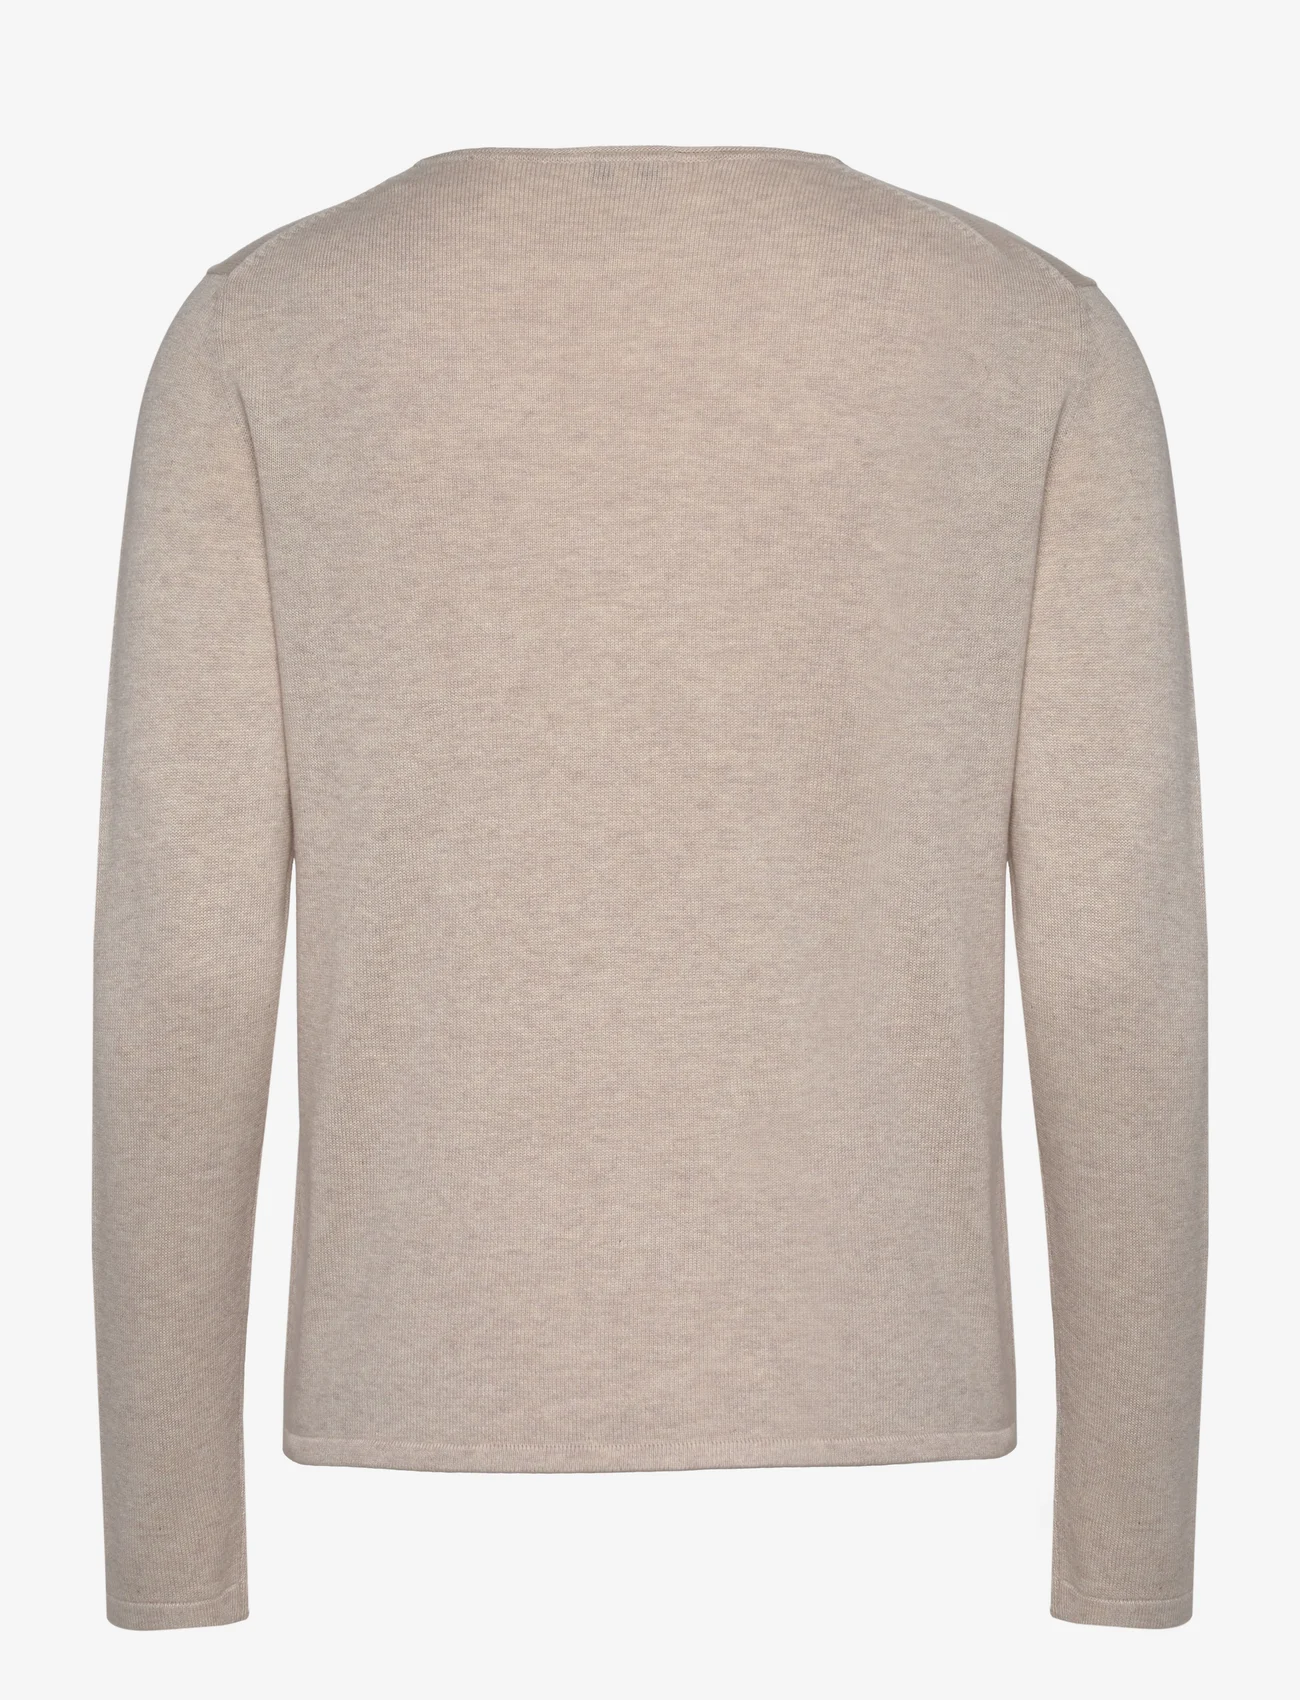 Tom Tailor - sweater basic v-neck - die niedrigsten preise - desert sand melange - 1